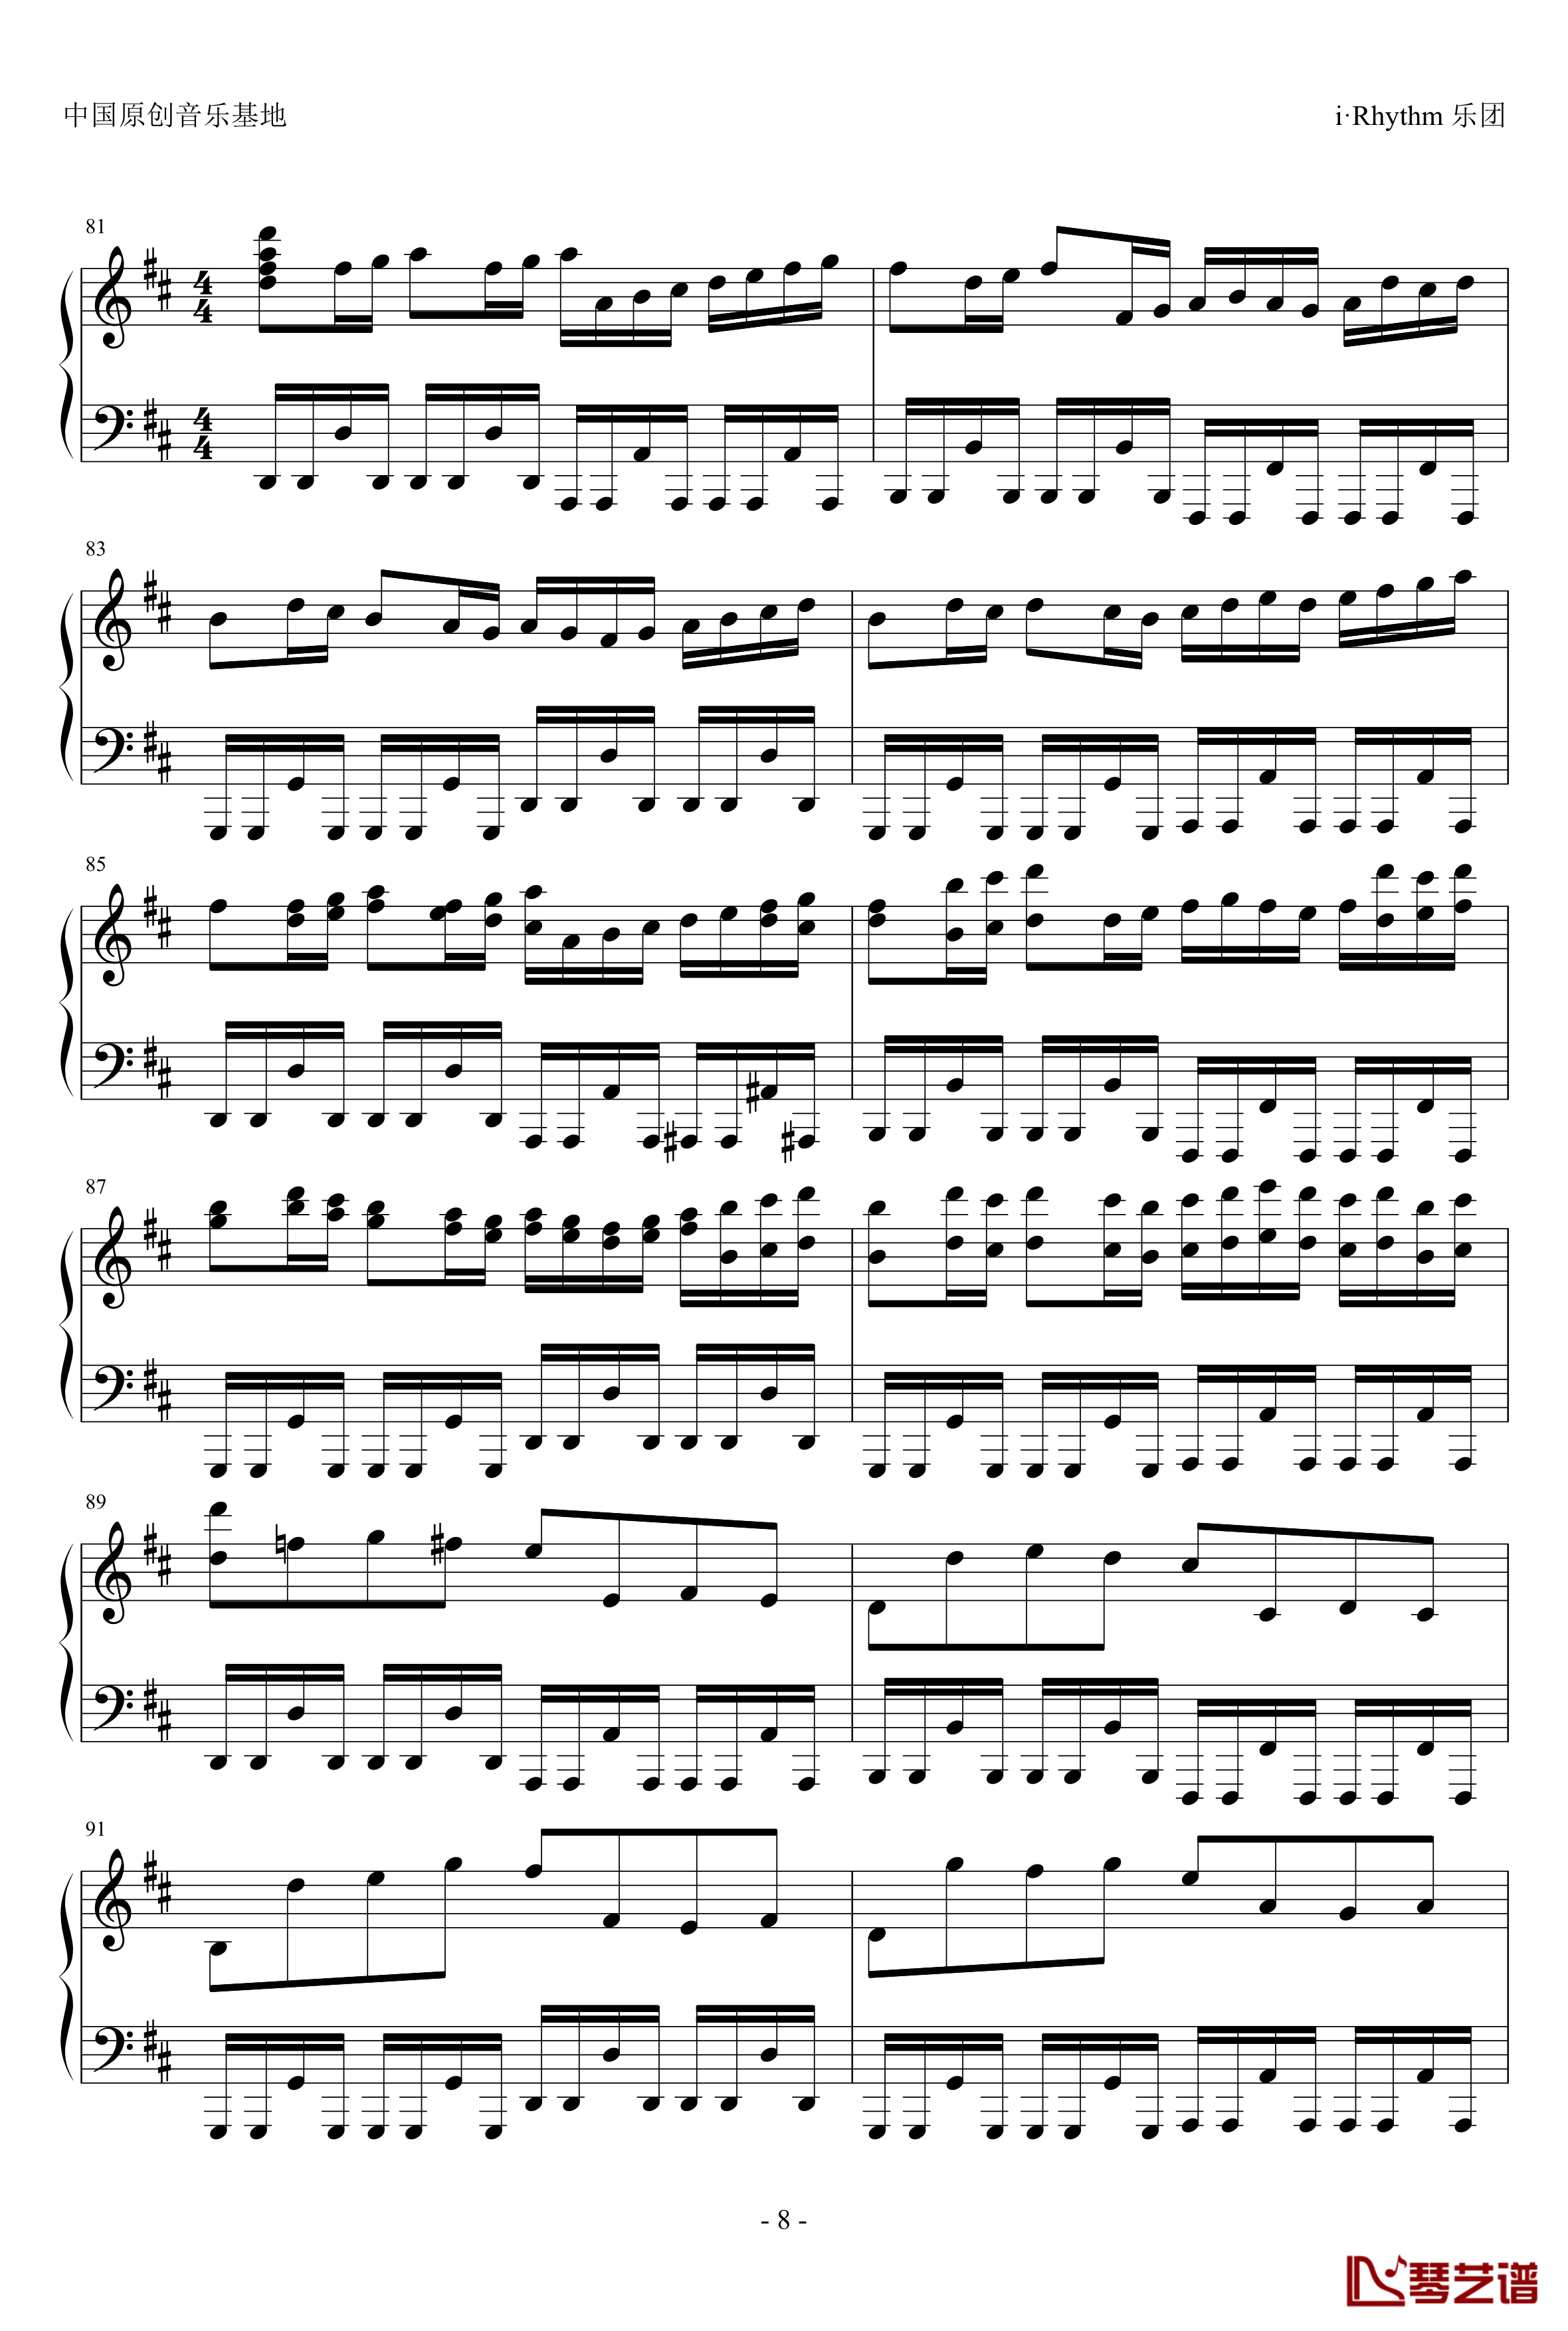 卡农钢琴谱-疯狂版-帕赫贝尔-Pachelbel8